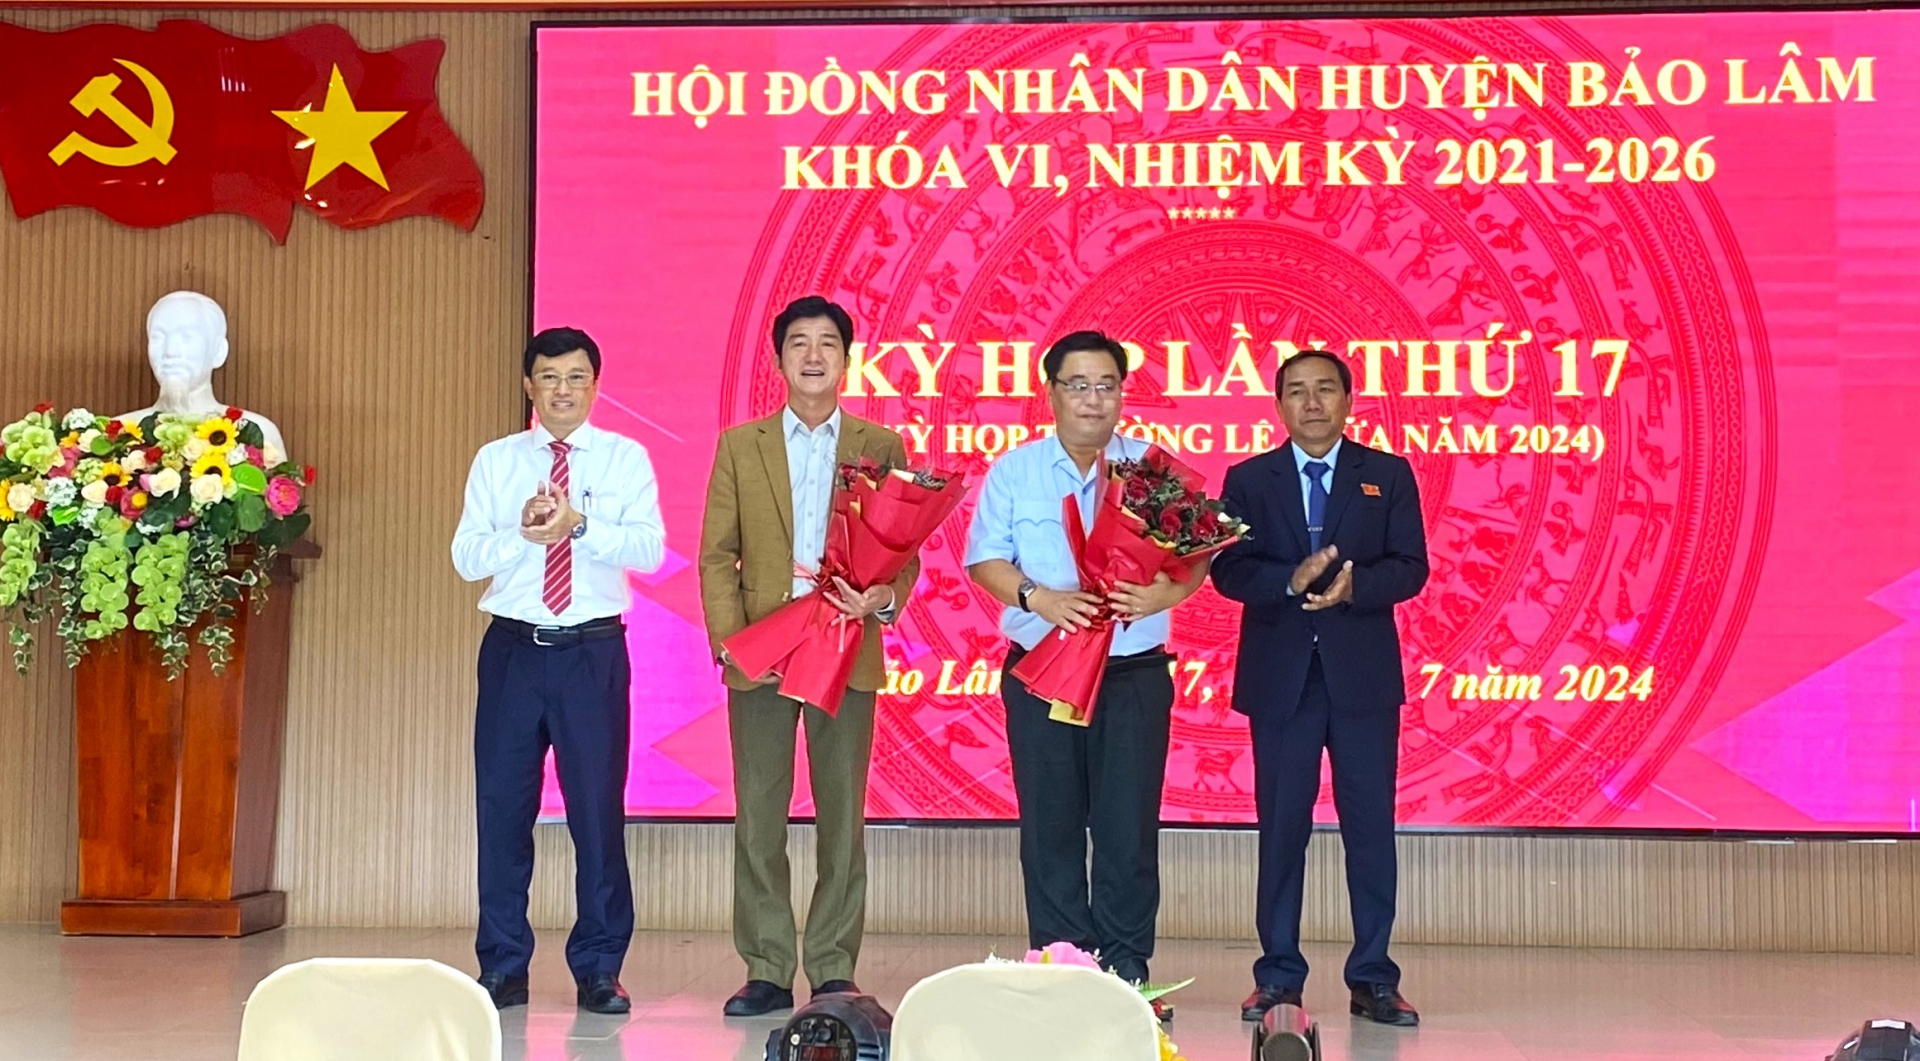 Lãnh đạo huyện Bảo Lâm tặng hoa cho các thành viên UBND huyện vừa được bầu bổ sung tại Kỳ họp